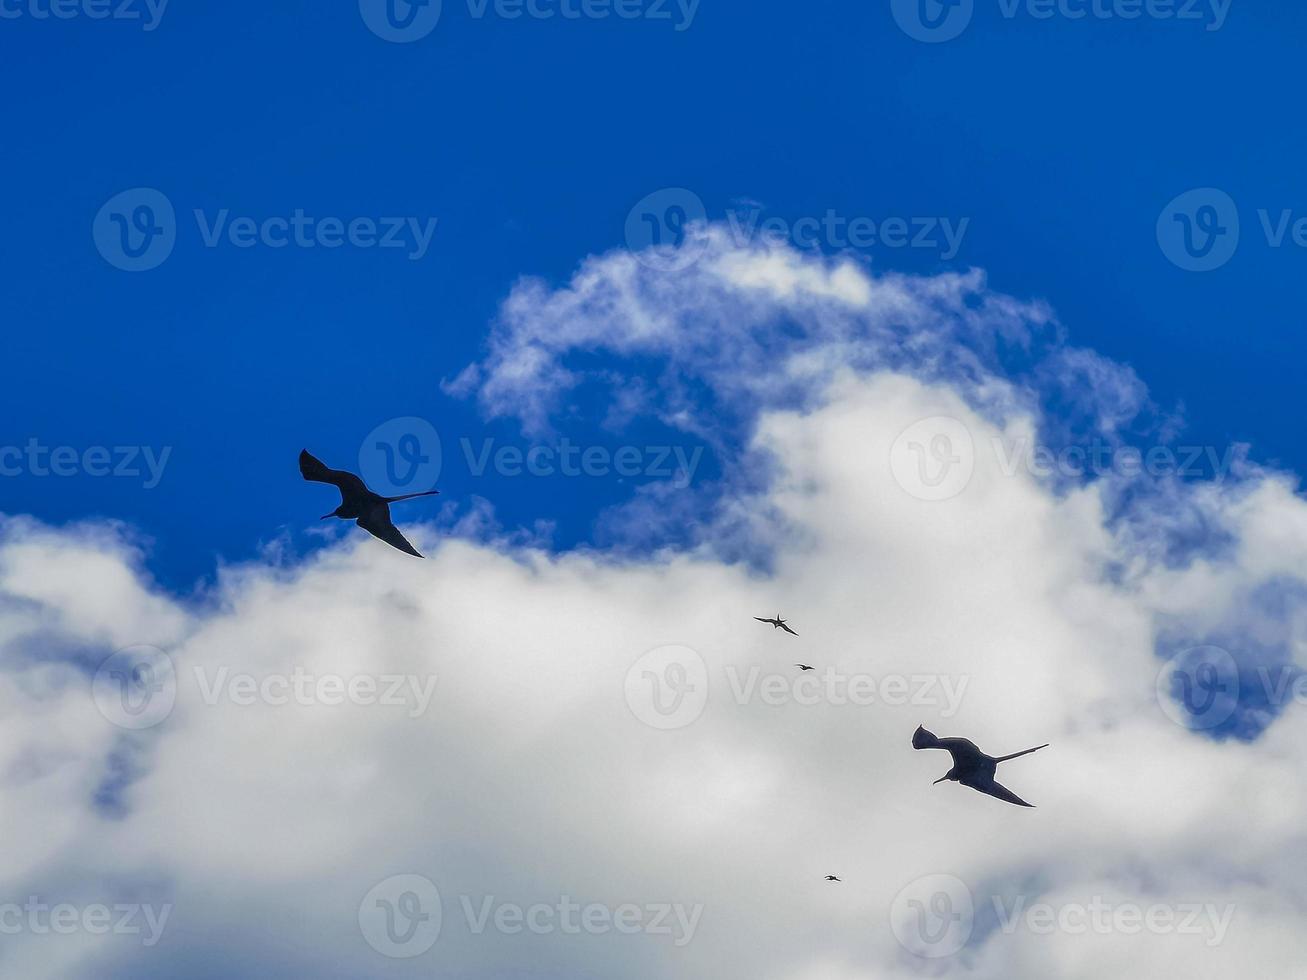 aves fregat rebanho voar blue sky fundo contoy ilha mexico. foto